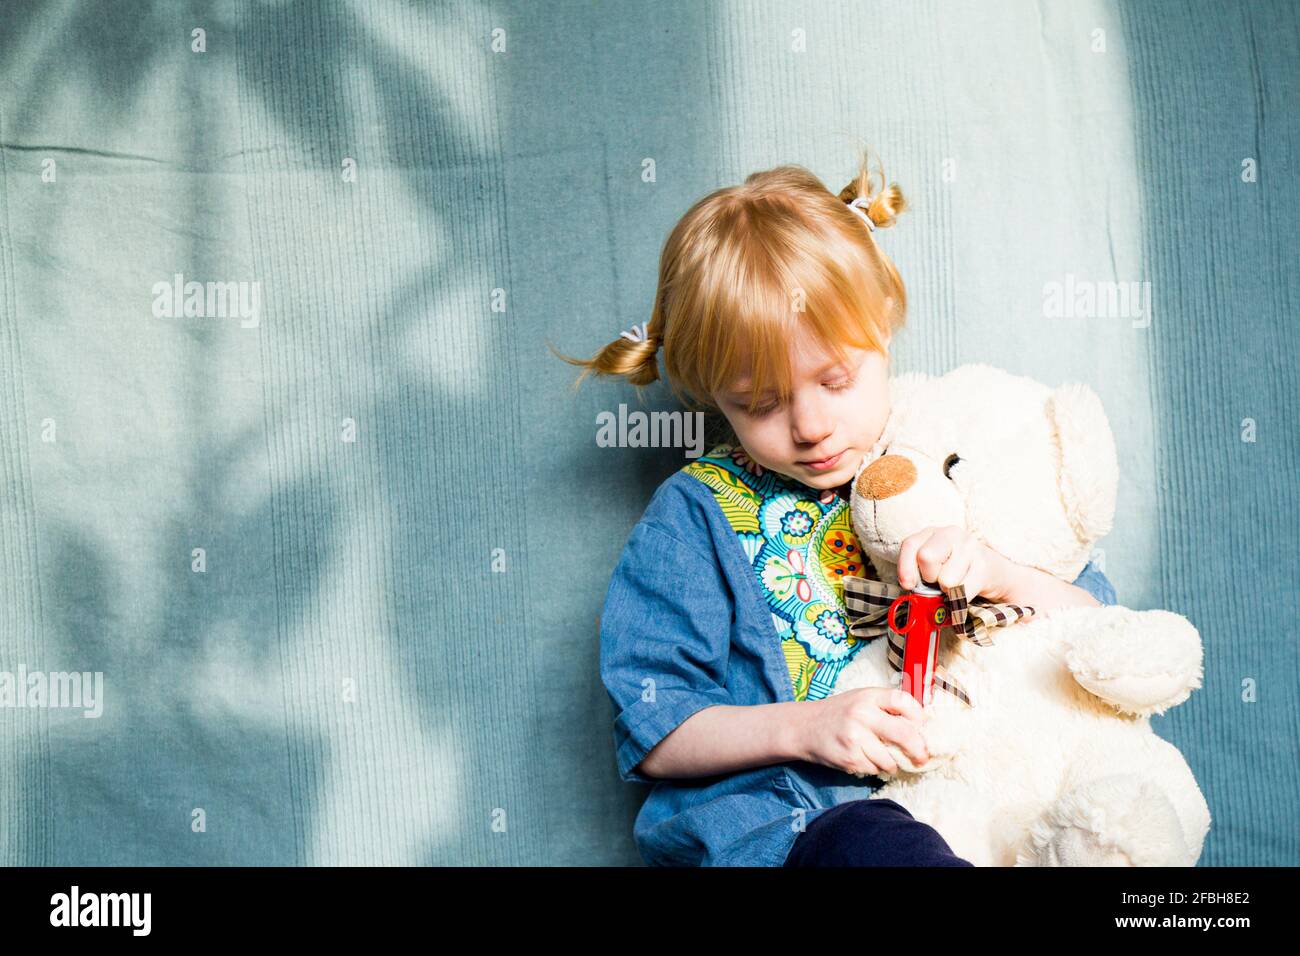 Fille blonde jouant avec l'ours en peluche contre le tissu bleu pendant jour ensoleillé Banque D'Images